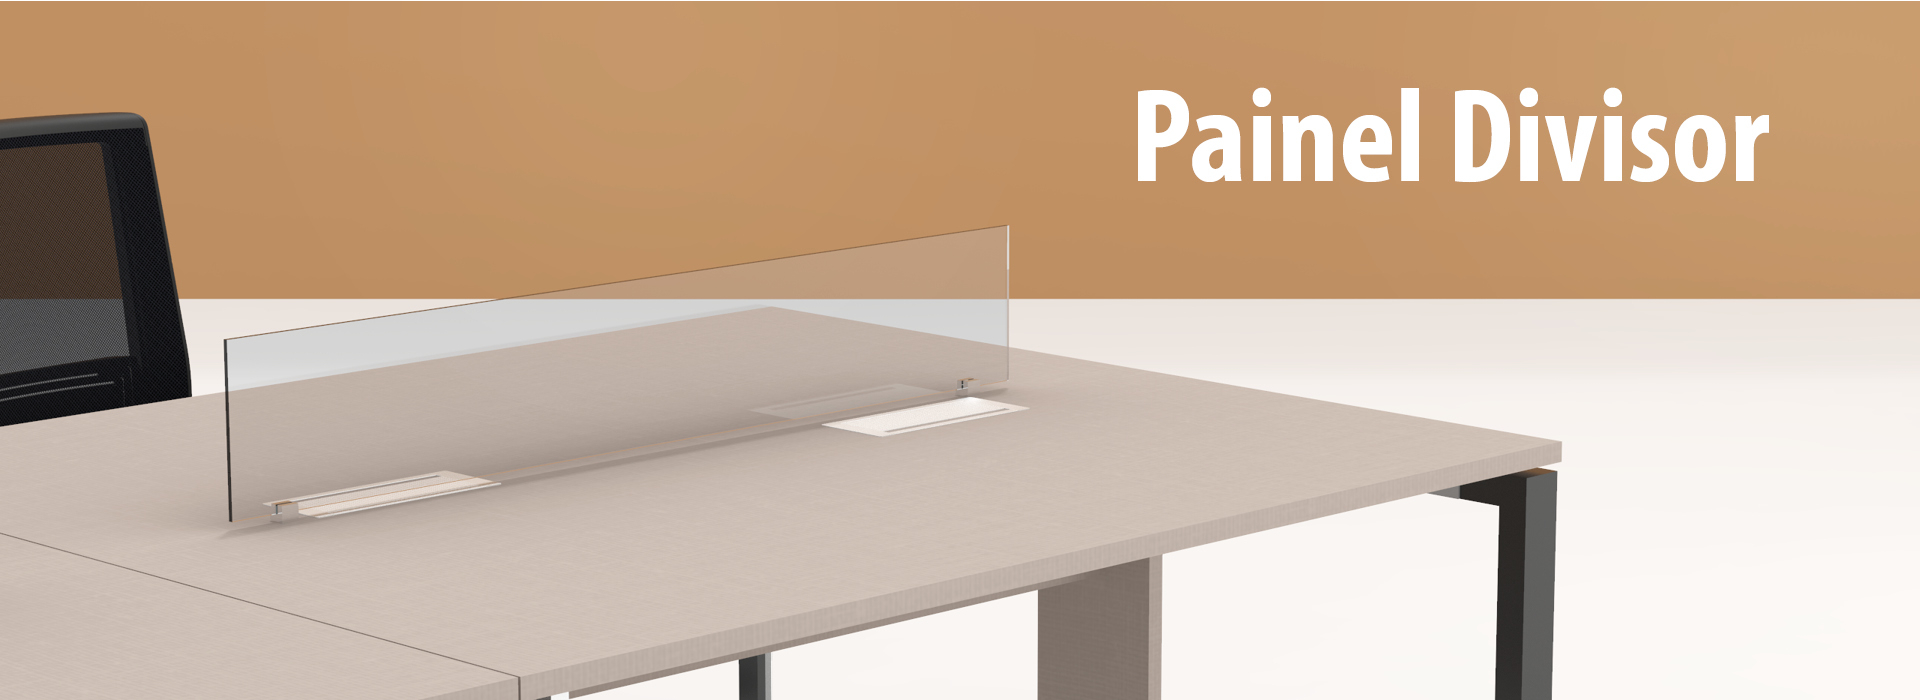 Painel Divisor de Vidro para Mesa e Plataforma de Trabalho